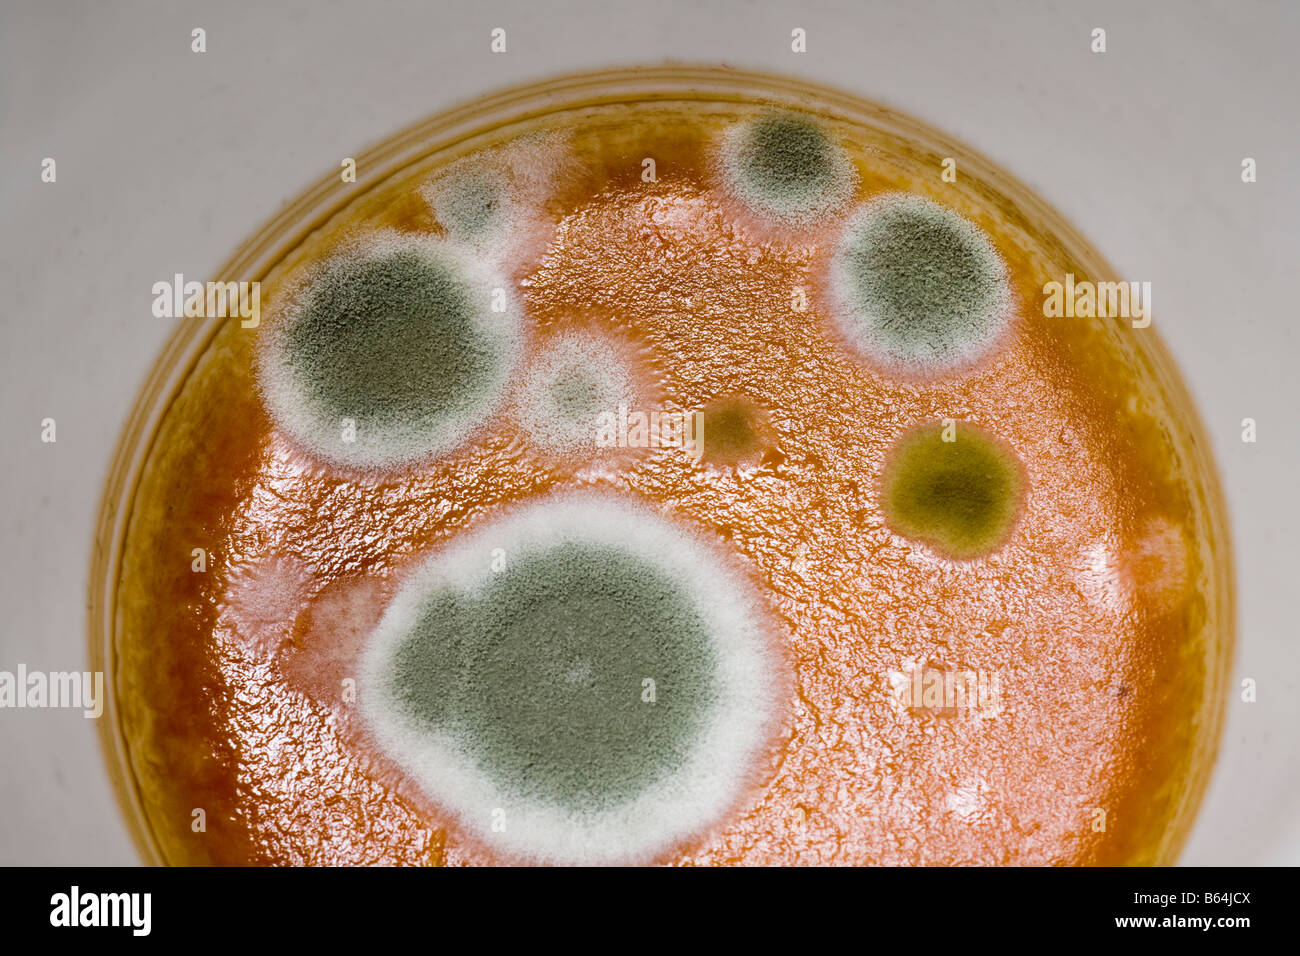 La pénicilline moisissure croissant dans une tasse de café filtré Banque D'Images